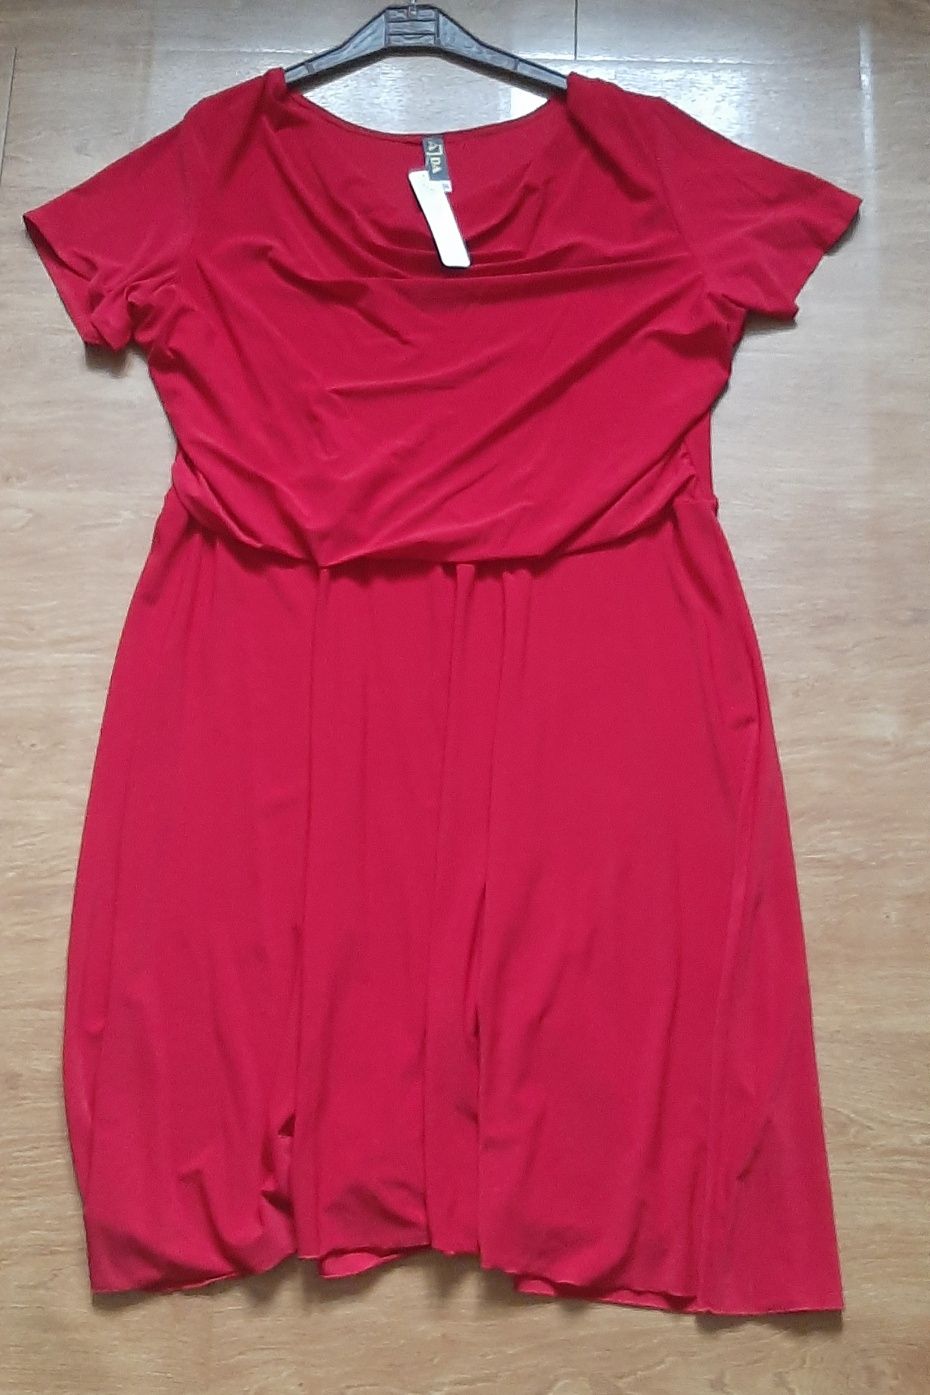 Elegancka czerwona sukienka rozmiar 56 firmy ajda